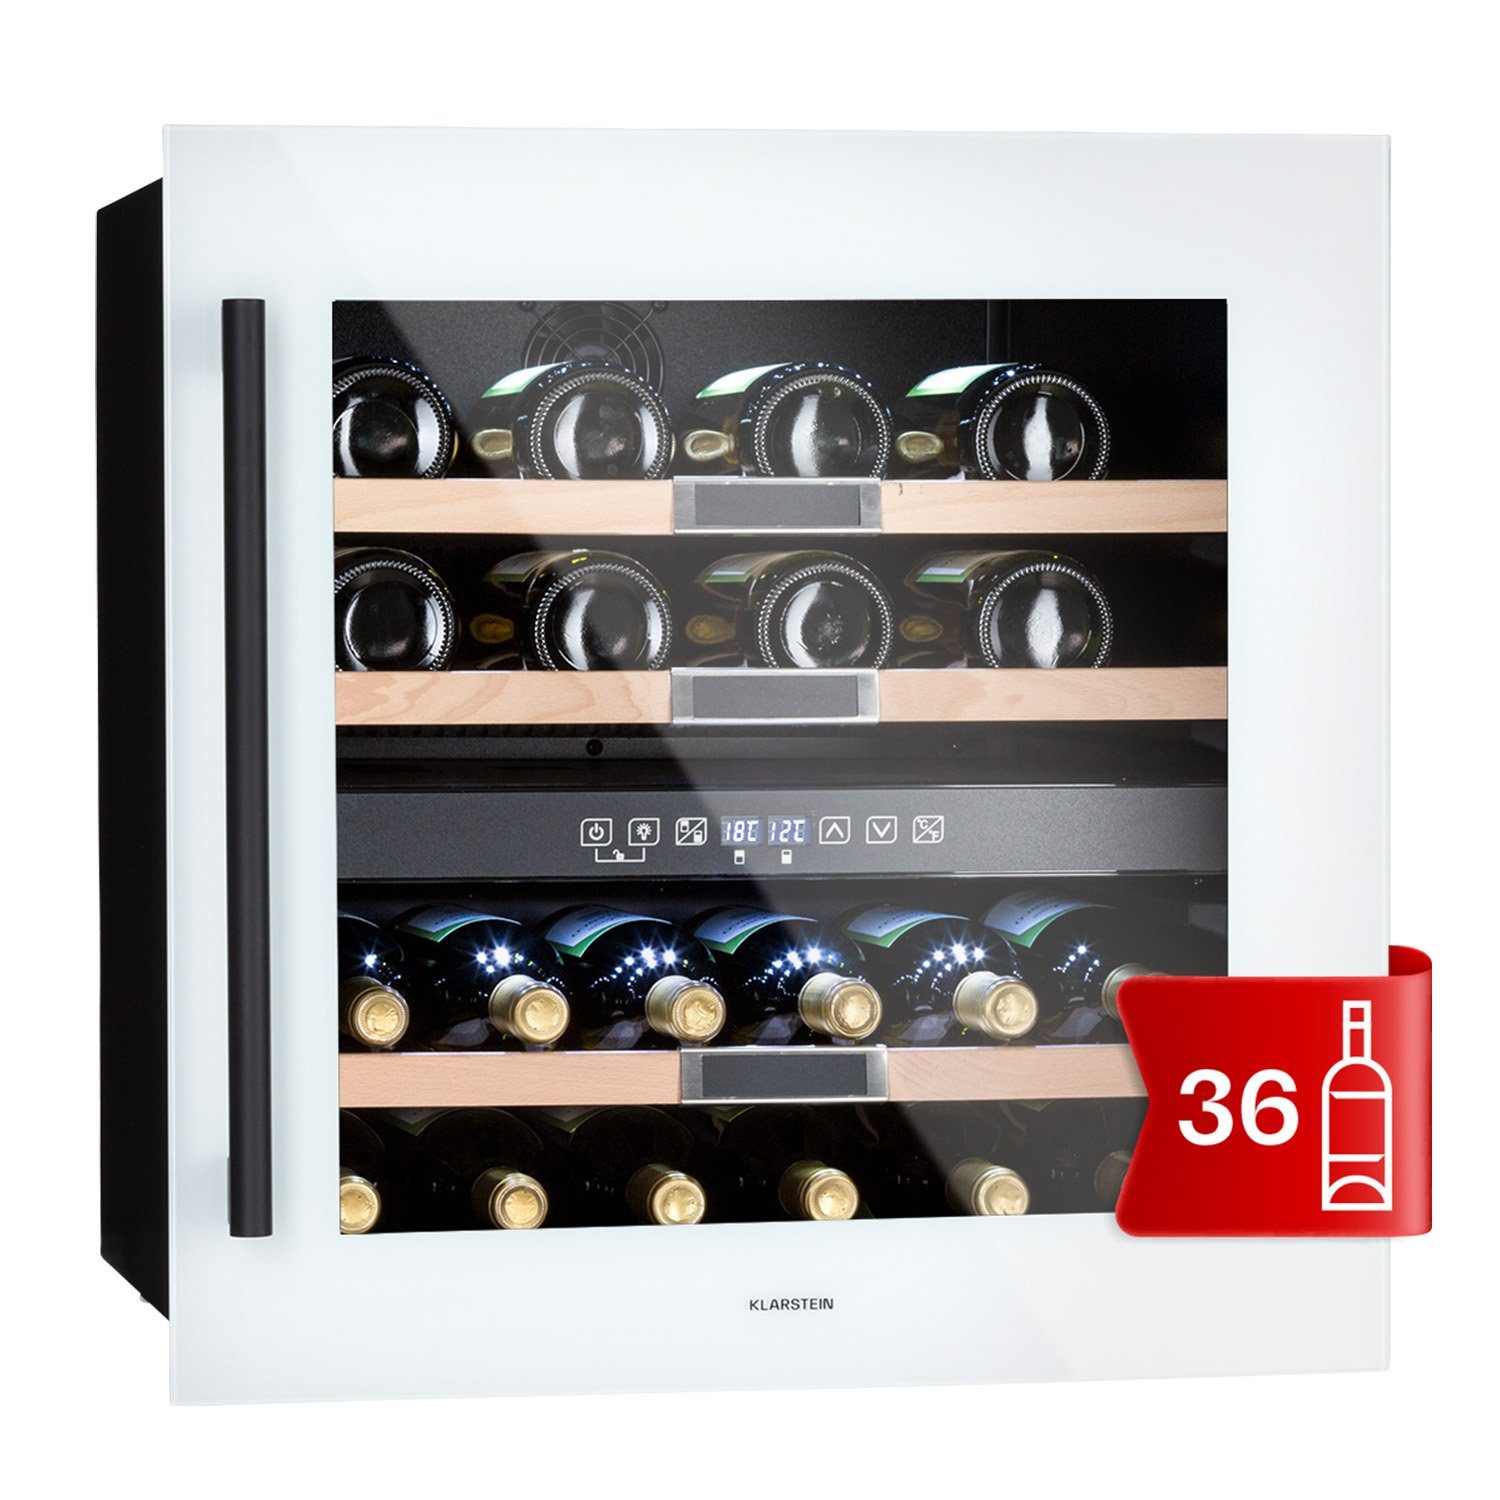 Klarstein Weinkühlschrank Vinsider 36 Quartz Edition, für 36 Standardflaschen á 0,75l,Wein Flaschenkühlschrank Weintemperierschrank Weinschrank Kühlschrank